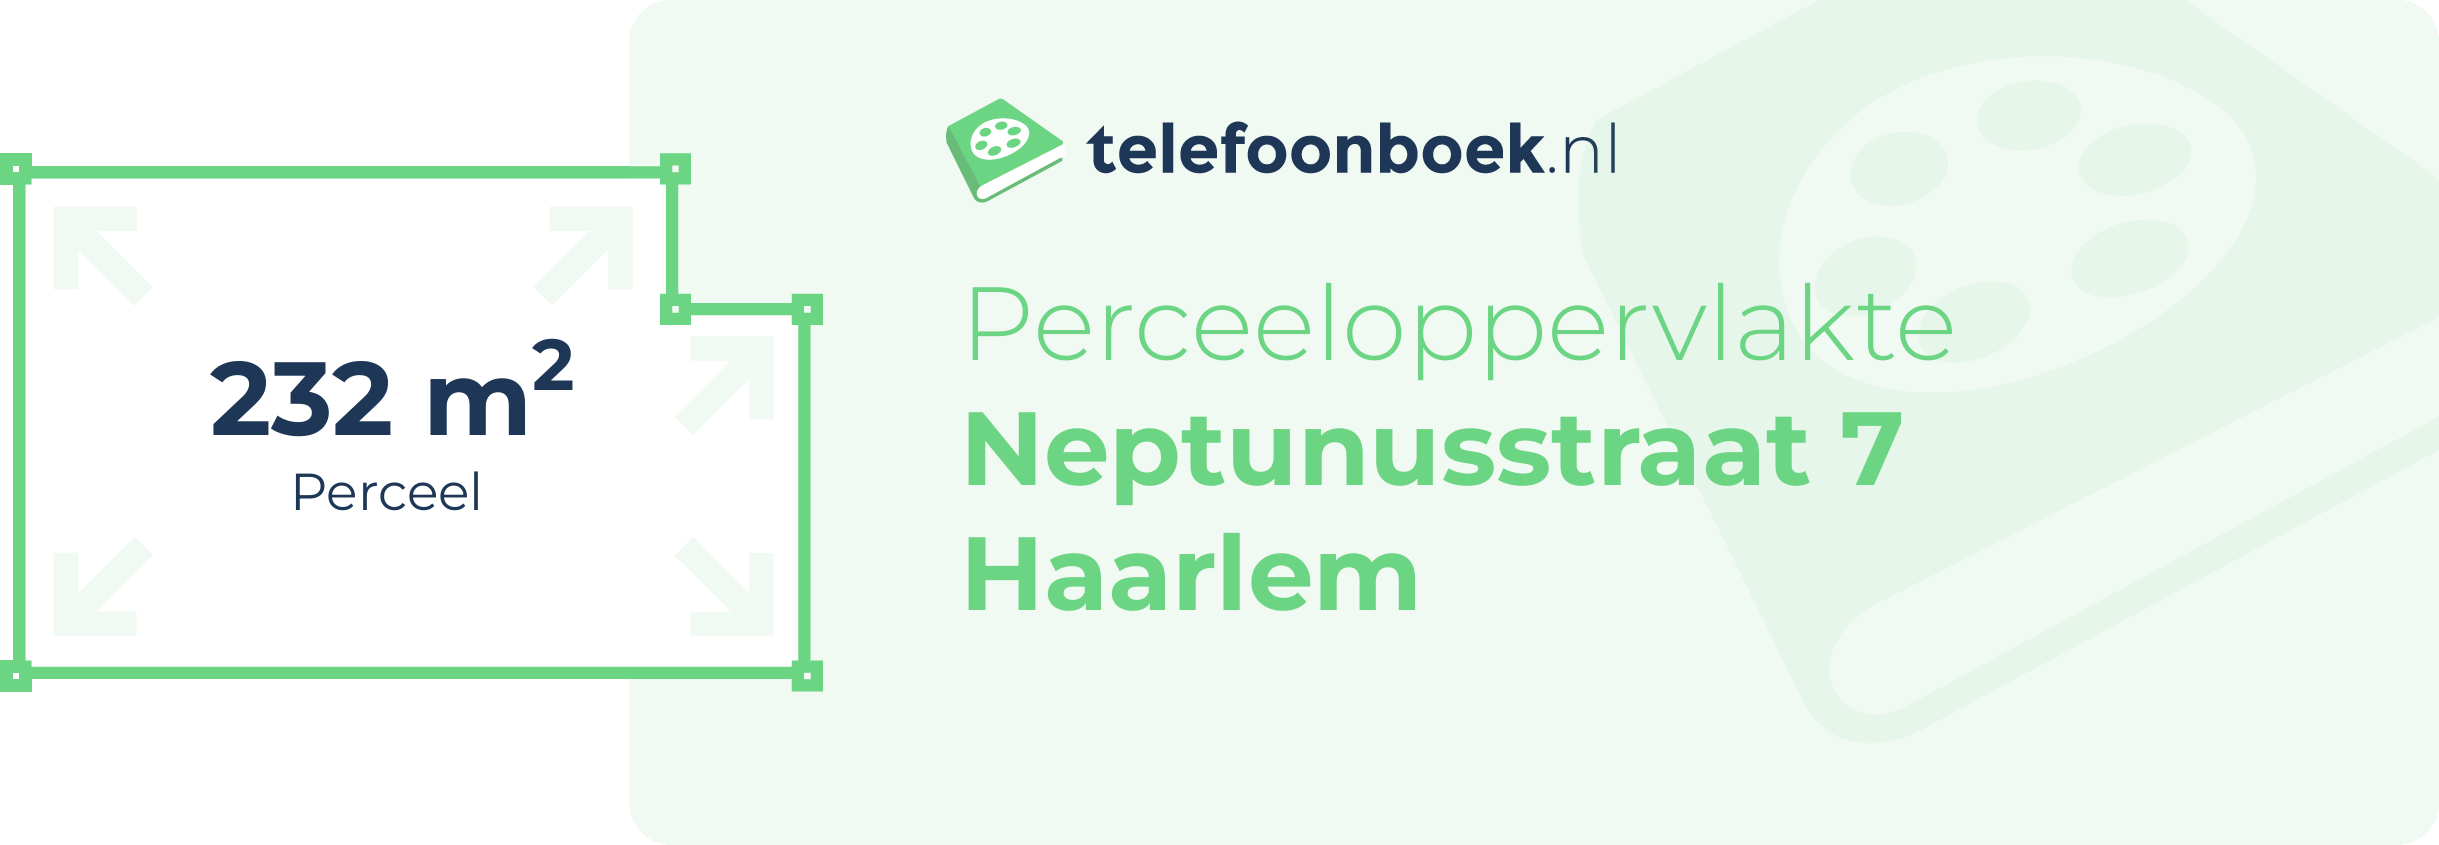 Perceeloppervlakte Neptunusstraat 7 Haarlem